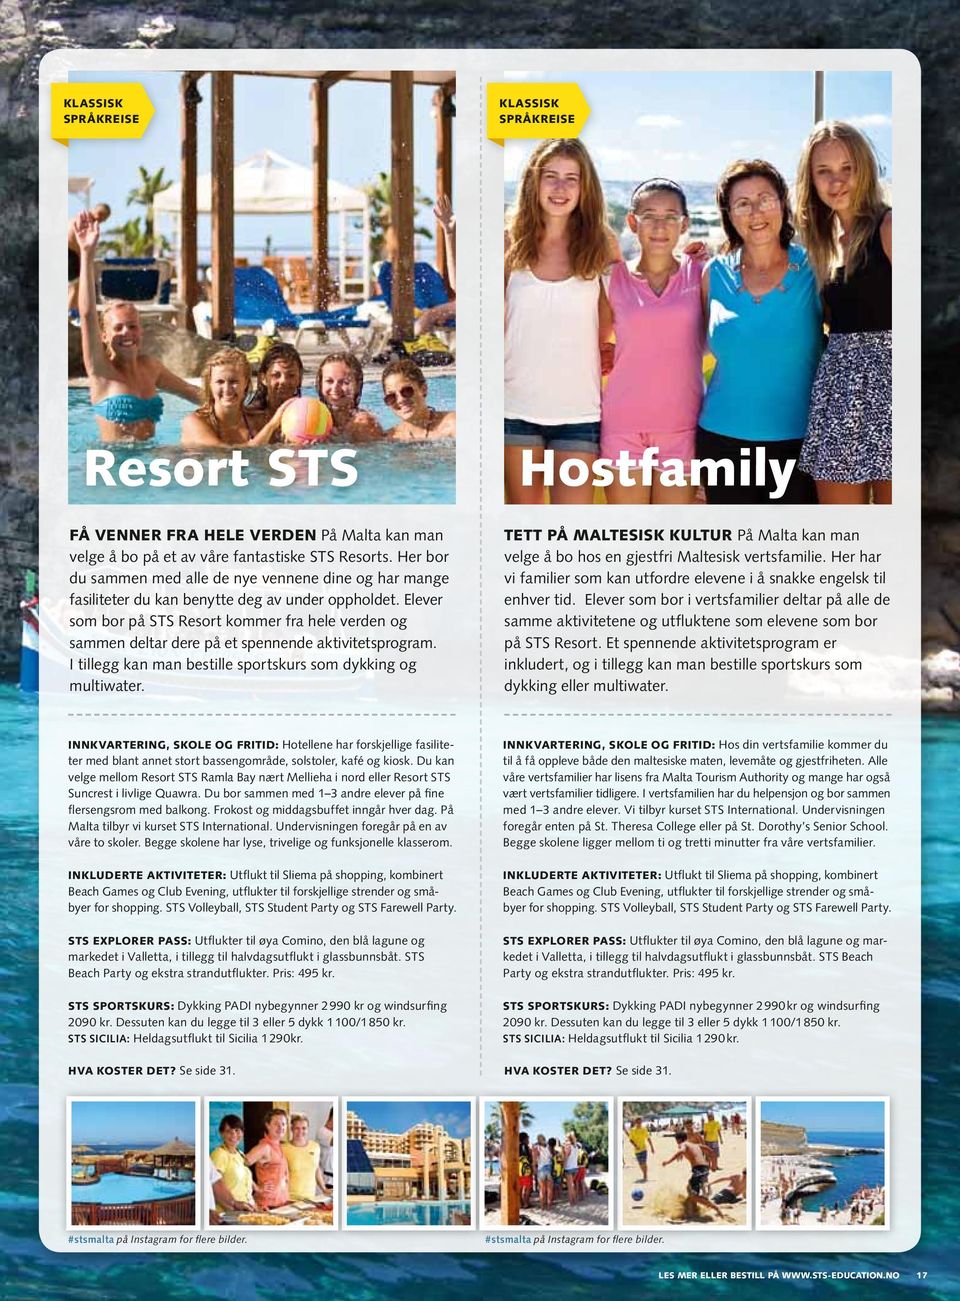 Elever som bor på STS Resort kommer fra hele verden og sammen deltar dere på et spennende aktivitetsprogram. I tillegg kan man bestille sportskurs som dykking og multiwater.